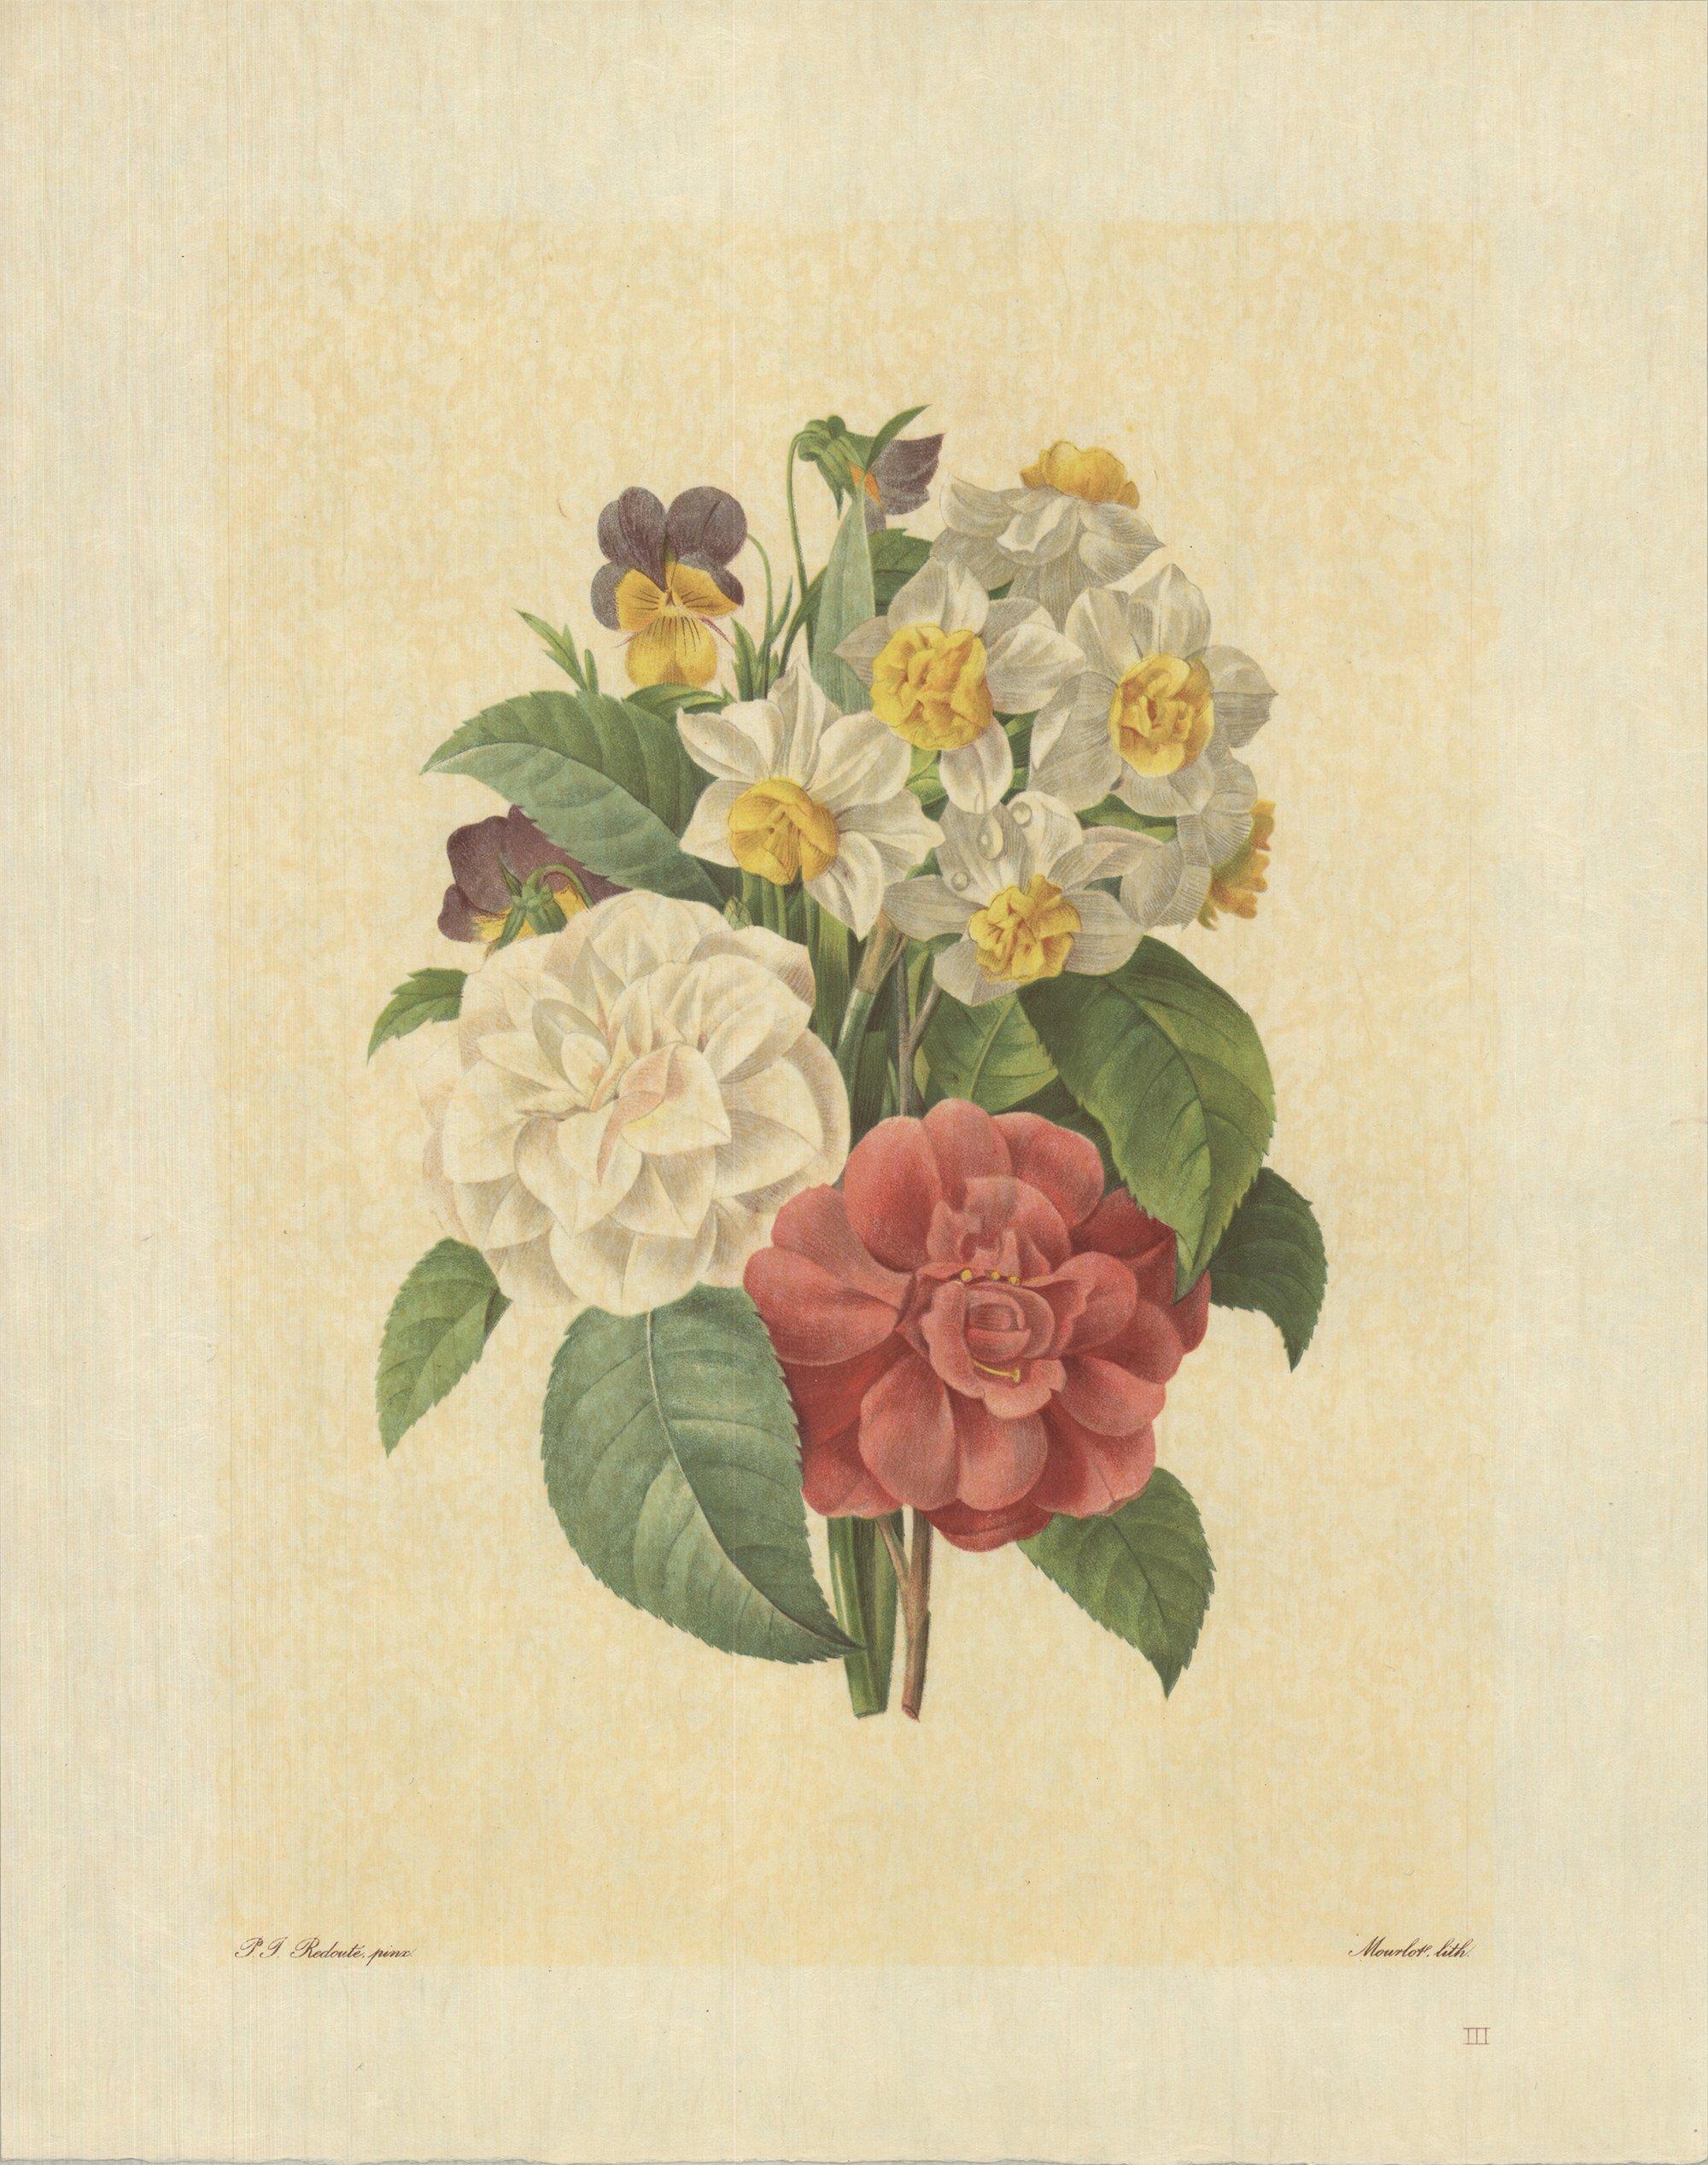 1939 Pierre-Joseph Redoute 'Bouquet De Camelias, Narcisses Et Pensees' France - Print by Pierre-Joseph Redouté